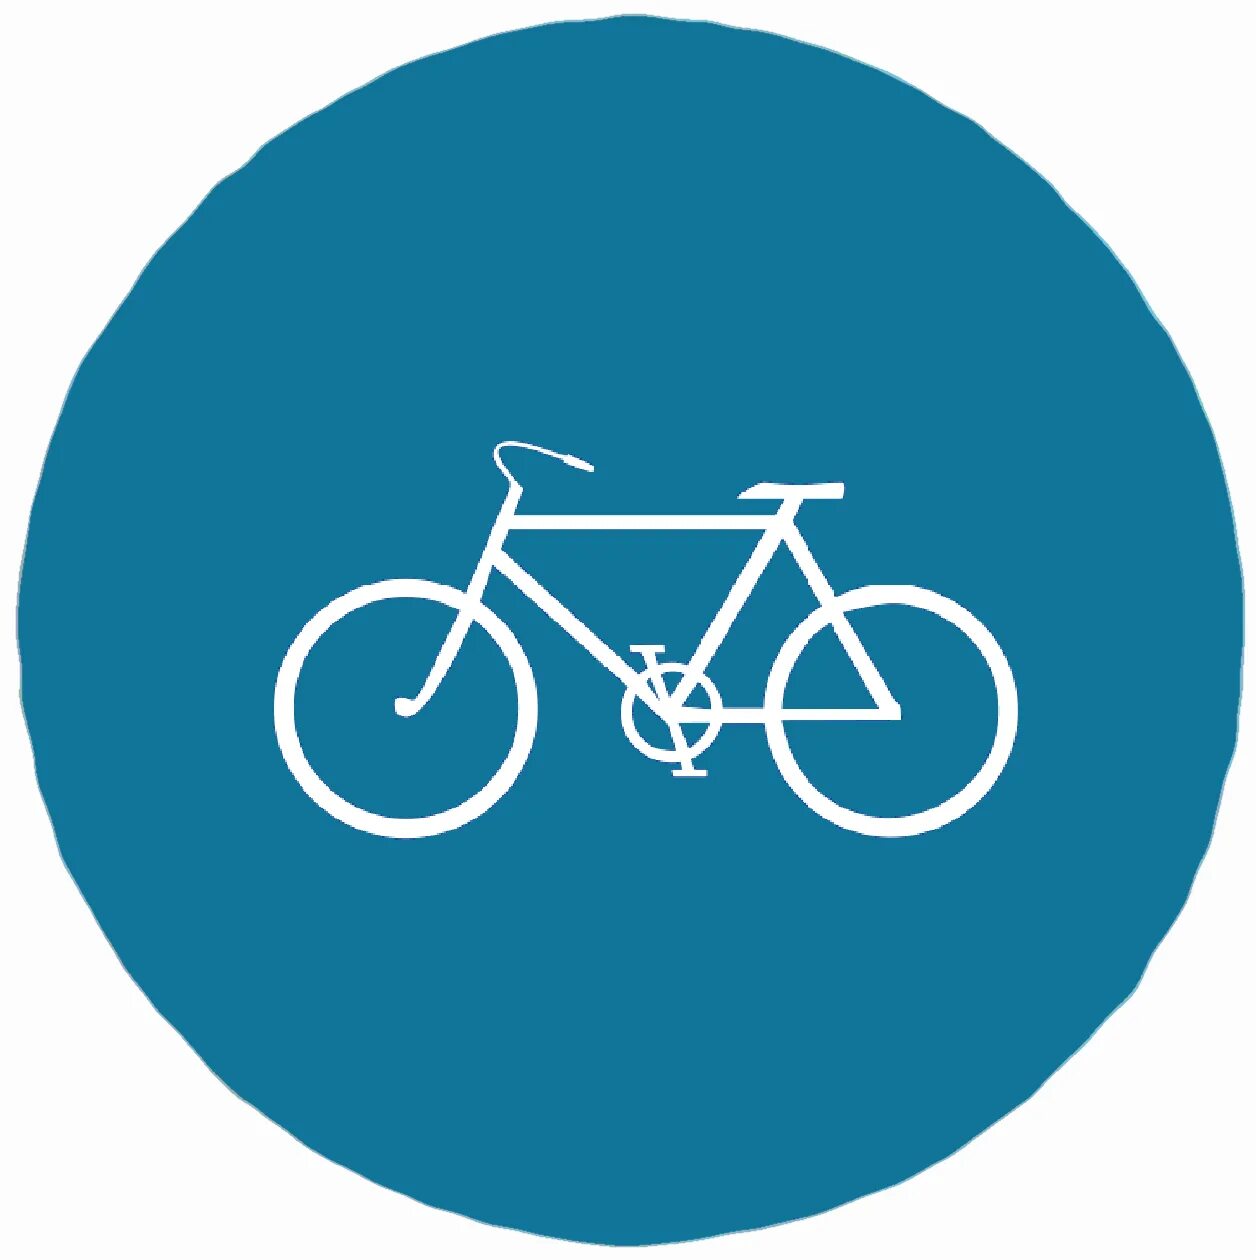 Дорожный знак велосипед в круге. Круглый знак с велосипедом. Дорожный знак с велосипедом в круге. Велосипед в синем круге. Знак велосипедная дорожка.